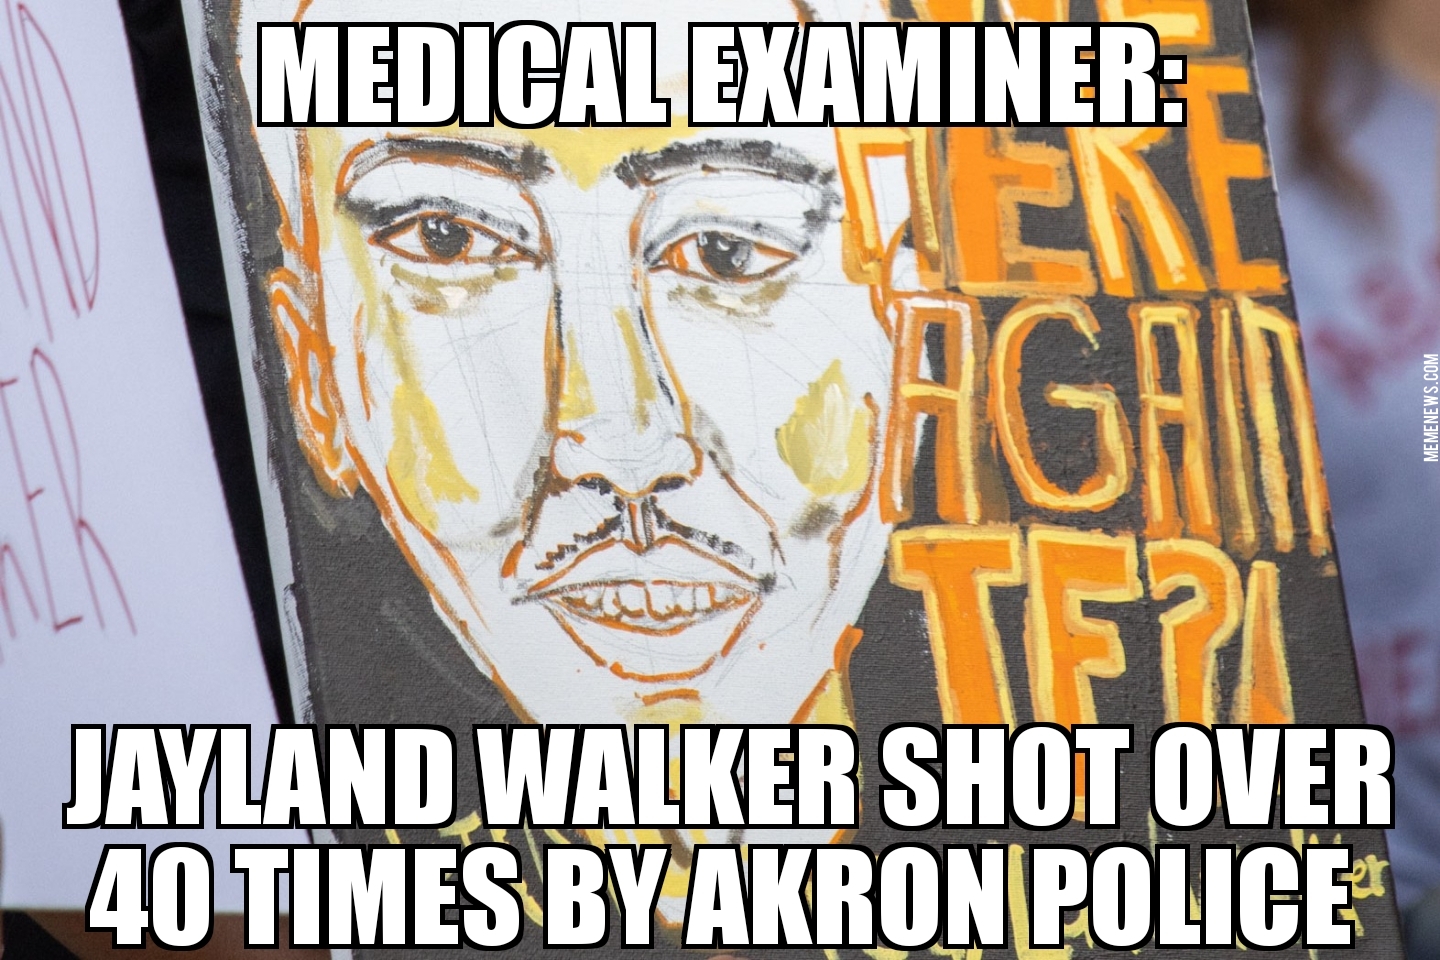 Jayland Walker shot over 40 times